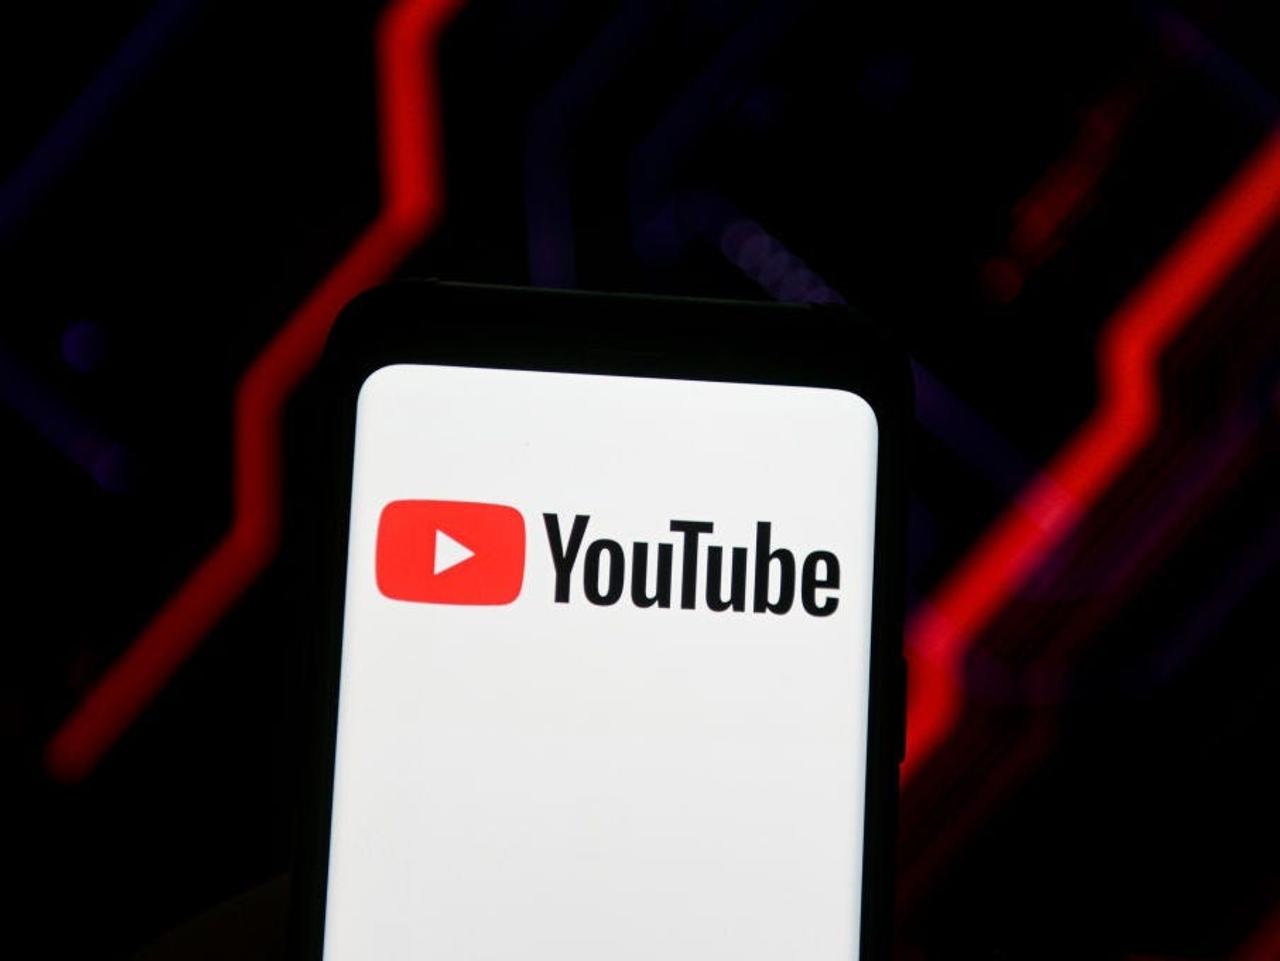 YouTubeは、COVID-19に関する誤報を防止する取り組みの中で、誤って別の動画を削除したことを認めた。